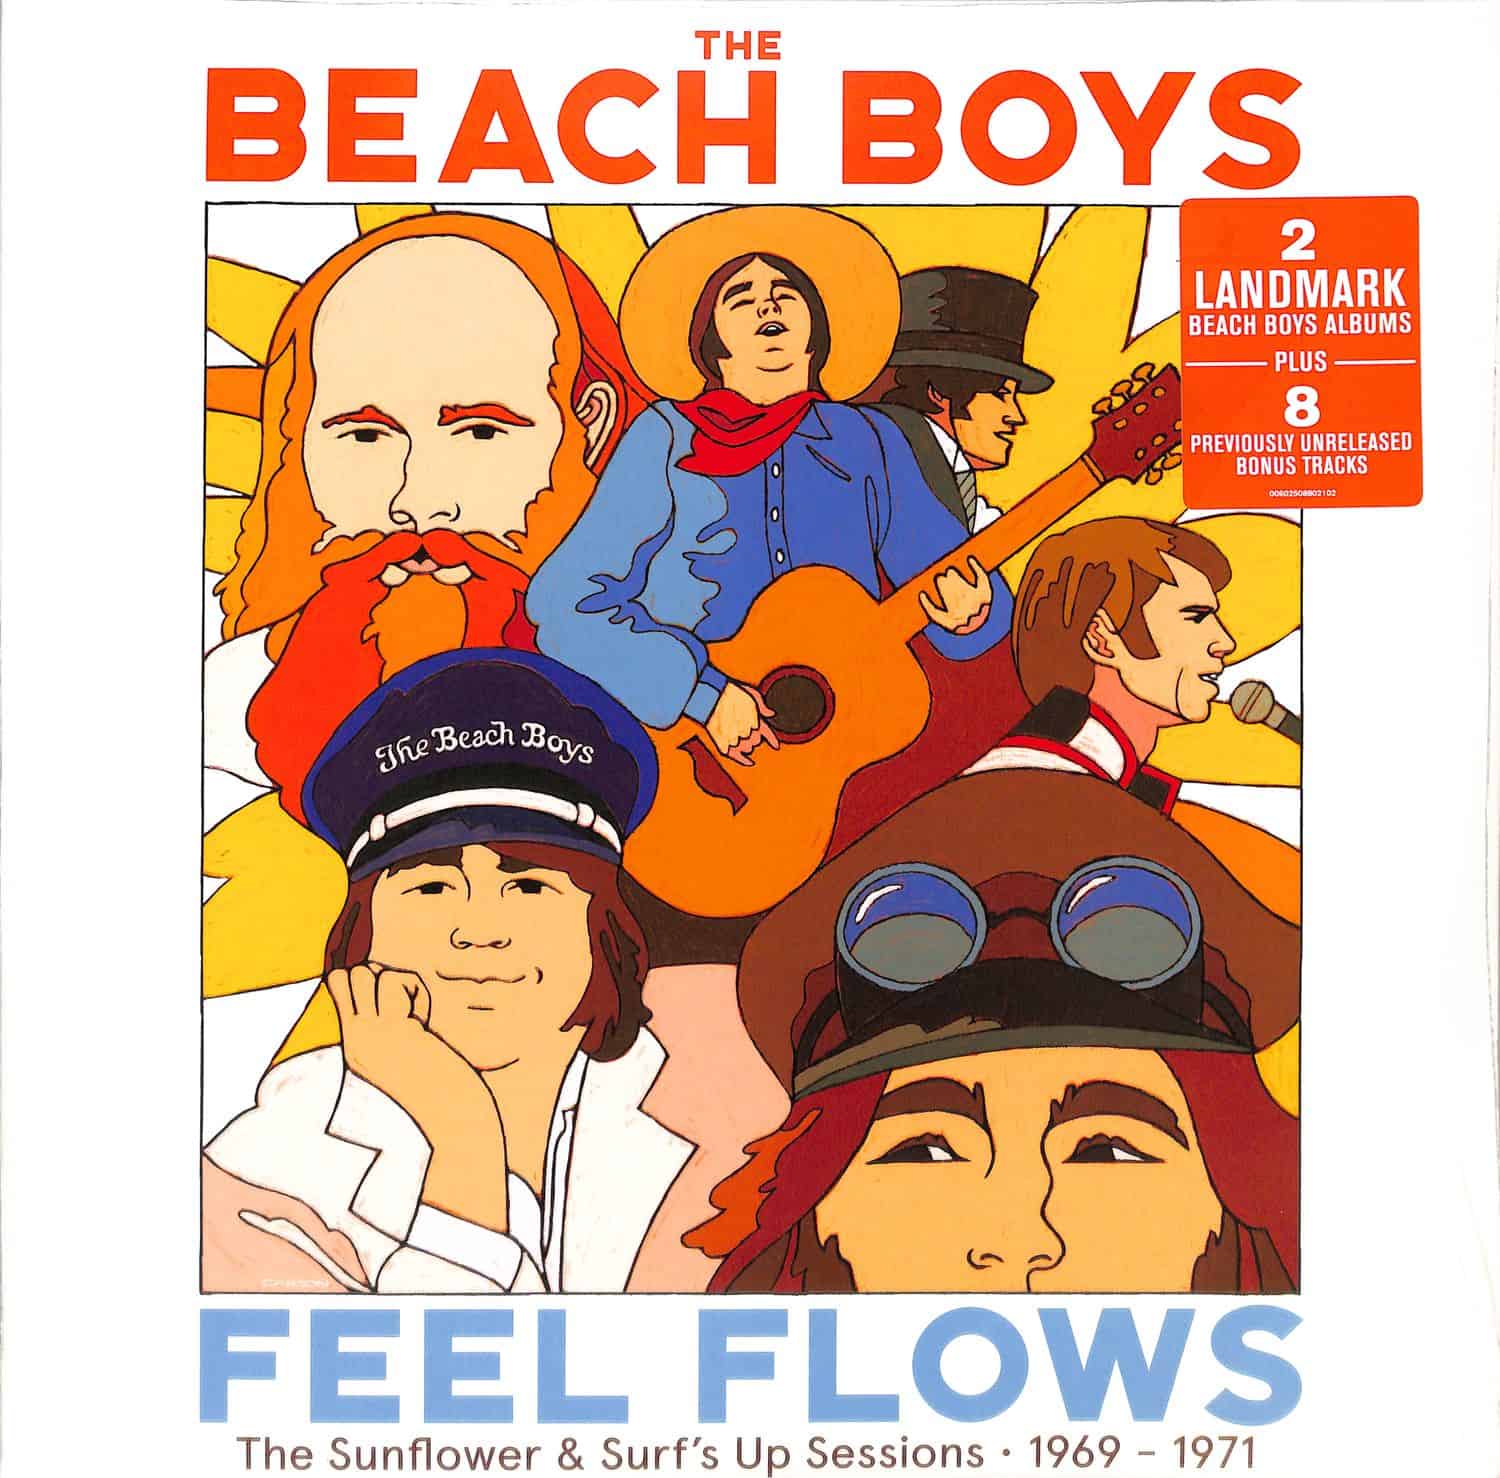 The Beach Boys - FEEL FLOWS SESSIONS 1969-71 